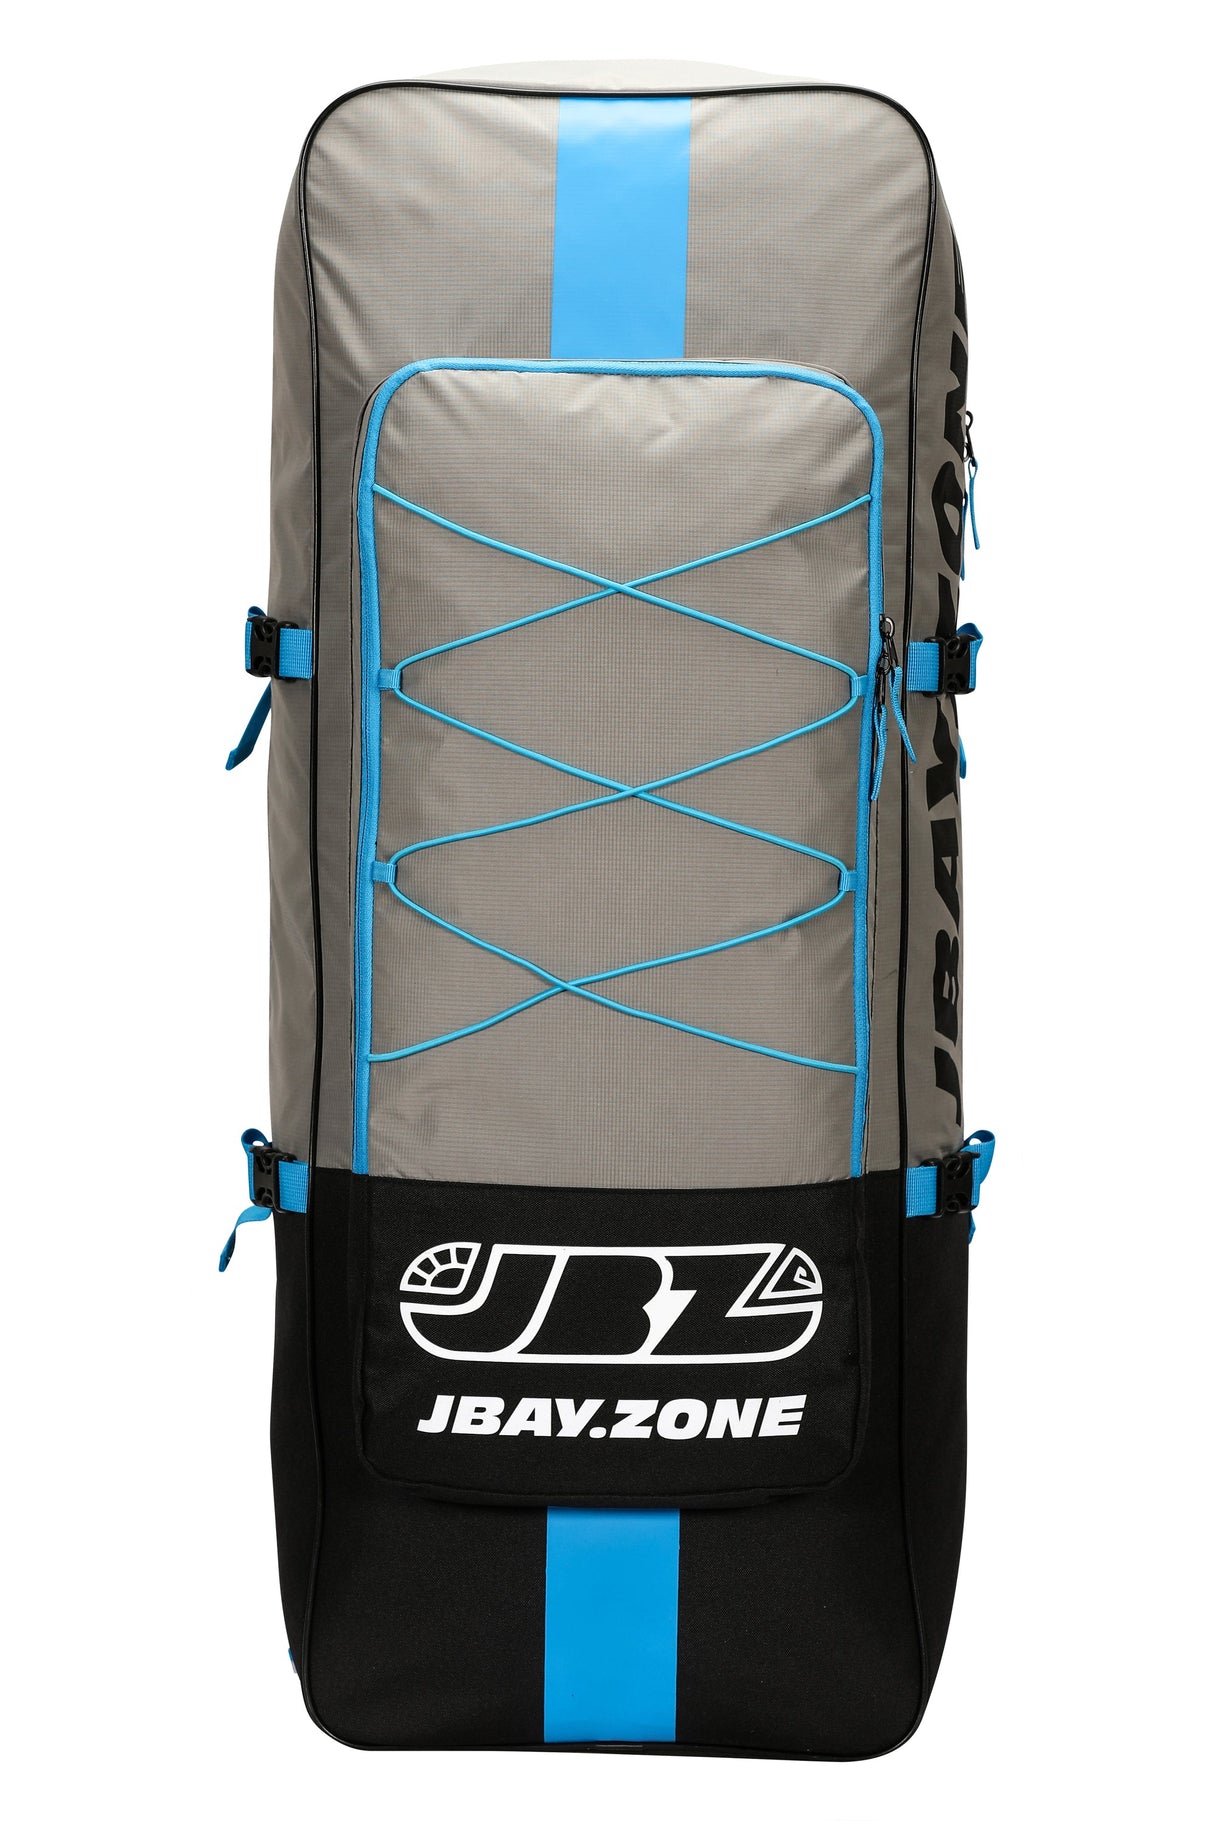 CJ4 Rush - JBAY.ZONE Lunghezza 426cm + Pagaia Alluminio + Zaino Trasporto + Pompa + Cavigliera Linea Jbay.zone - TIMESPORT24